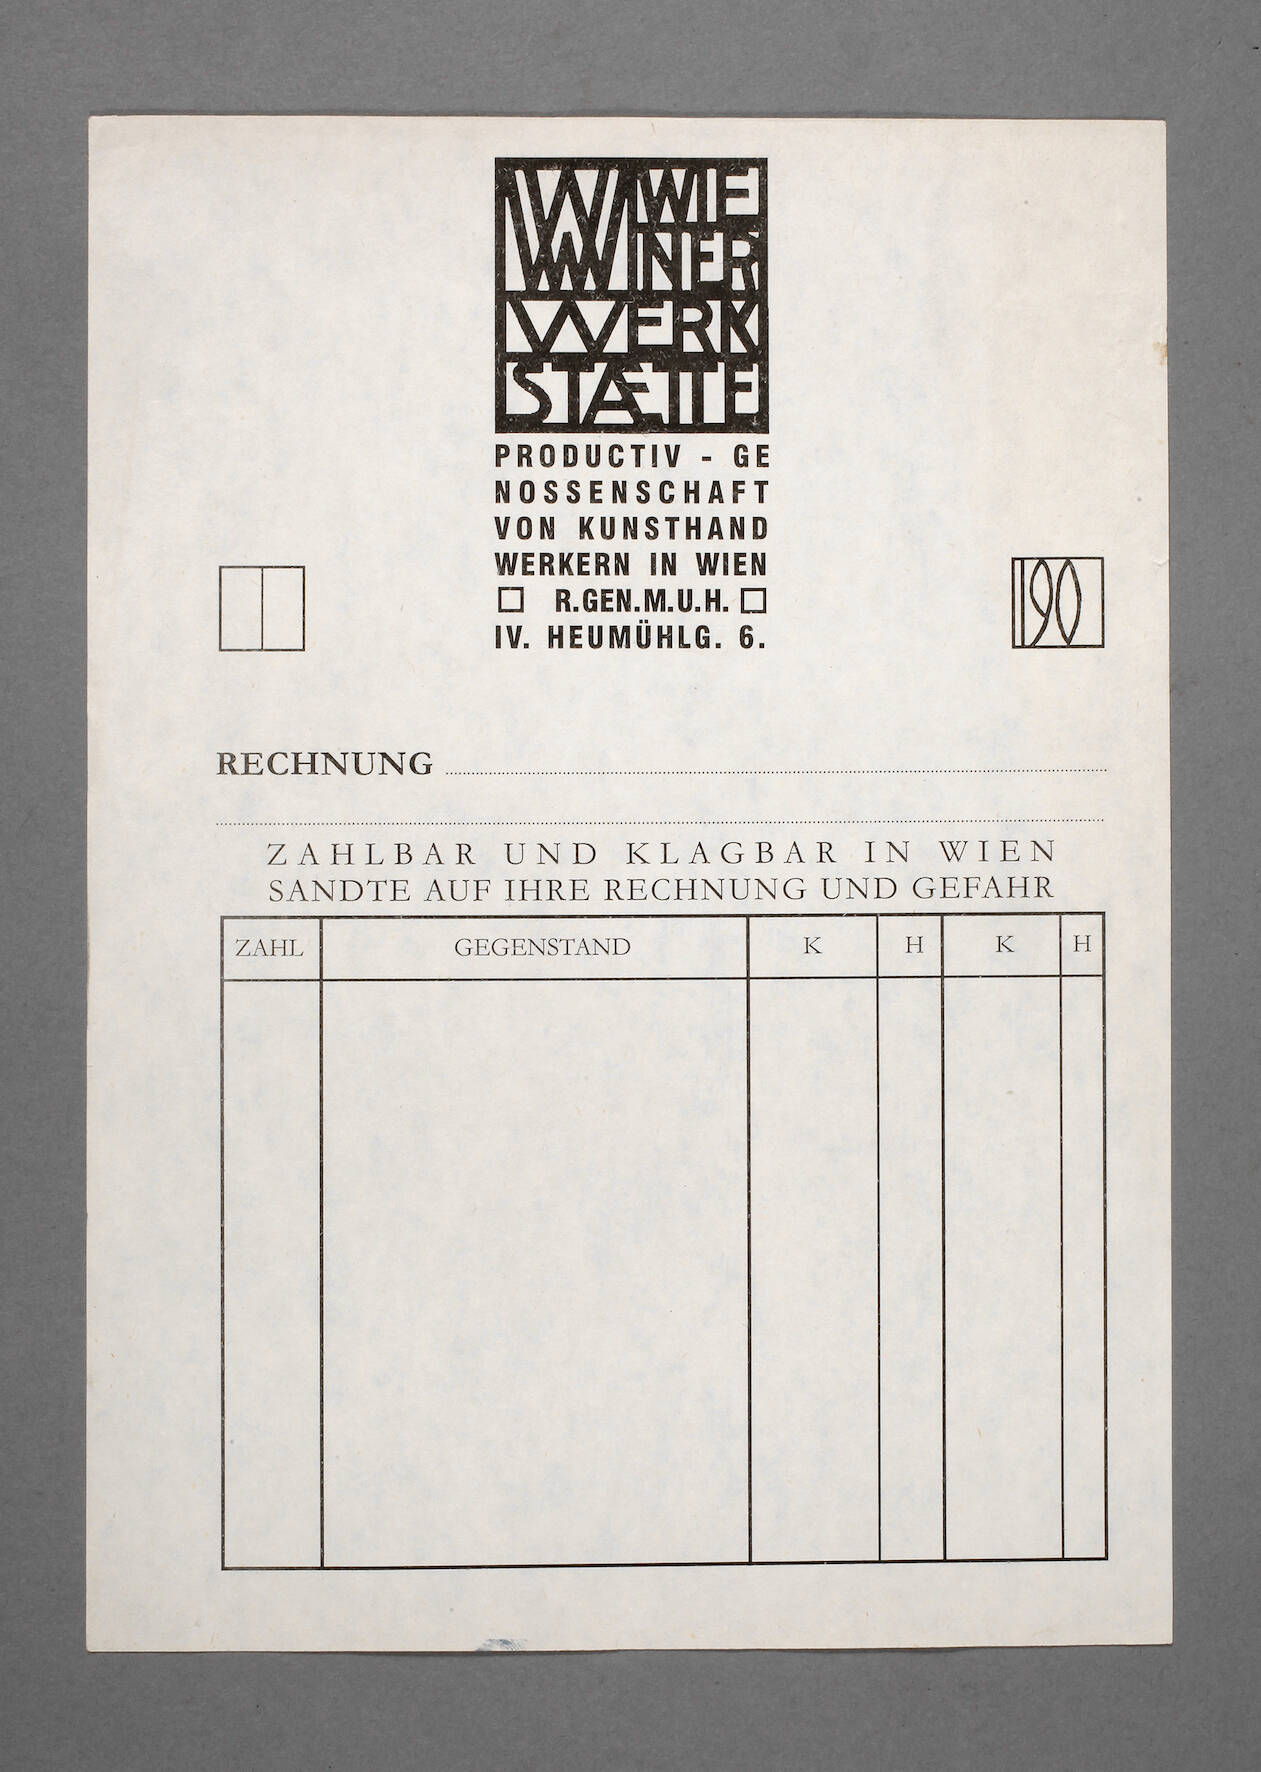 Rechnungsformular Wiener Werkstätte